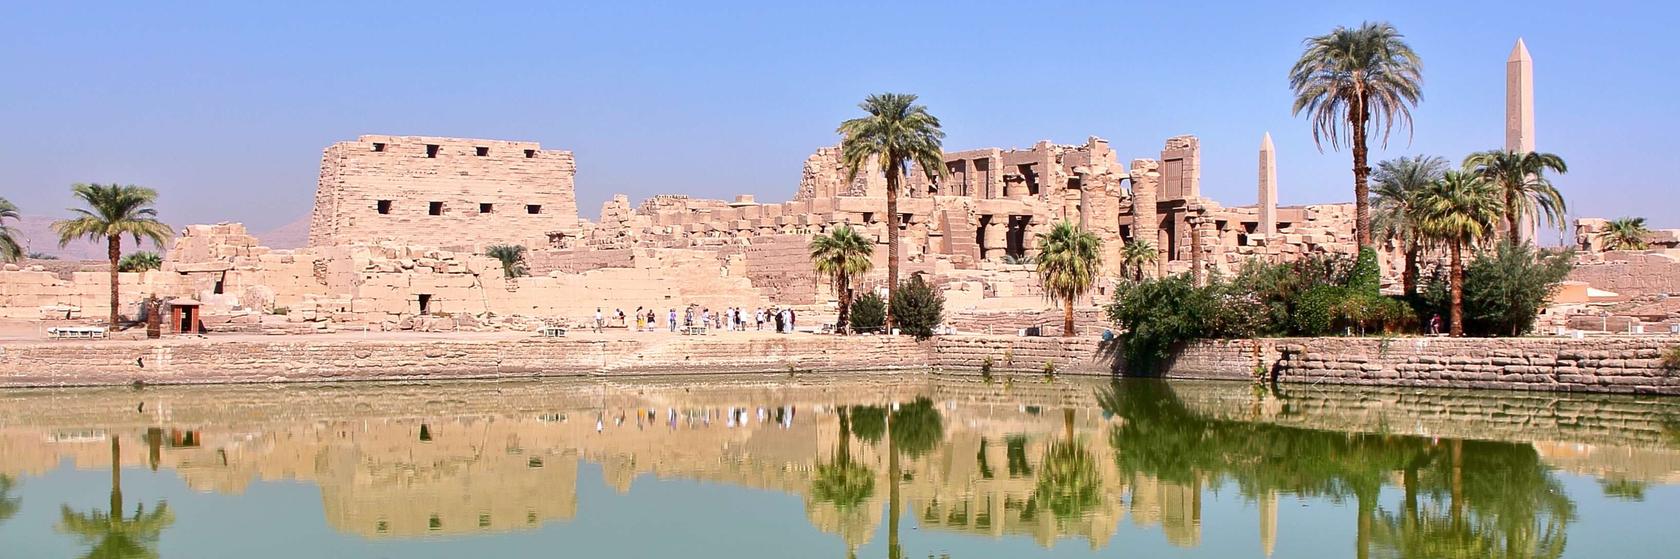 Zábava a volný čas od Luxoru přes Lybijskou poušť až po Asuán